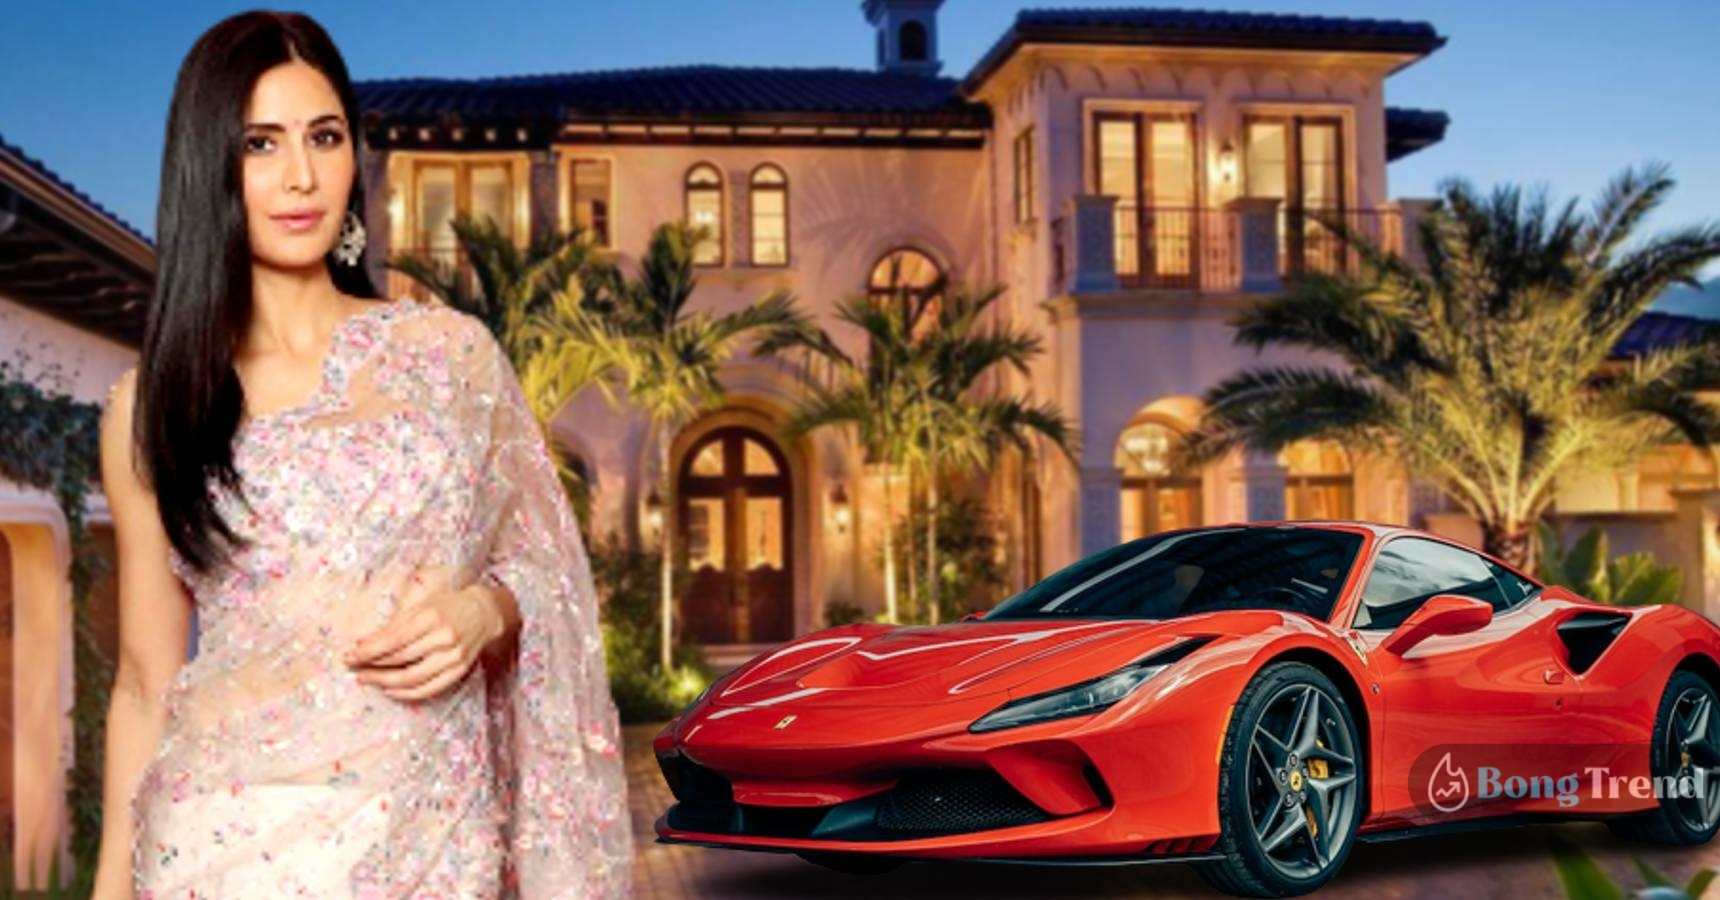 Take a look at the net worth of bollywood actress Katrina Kaif